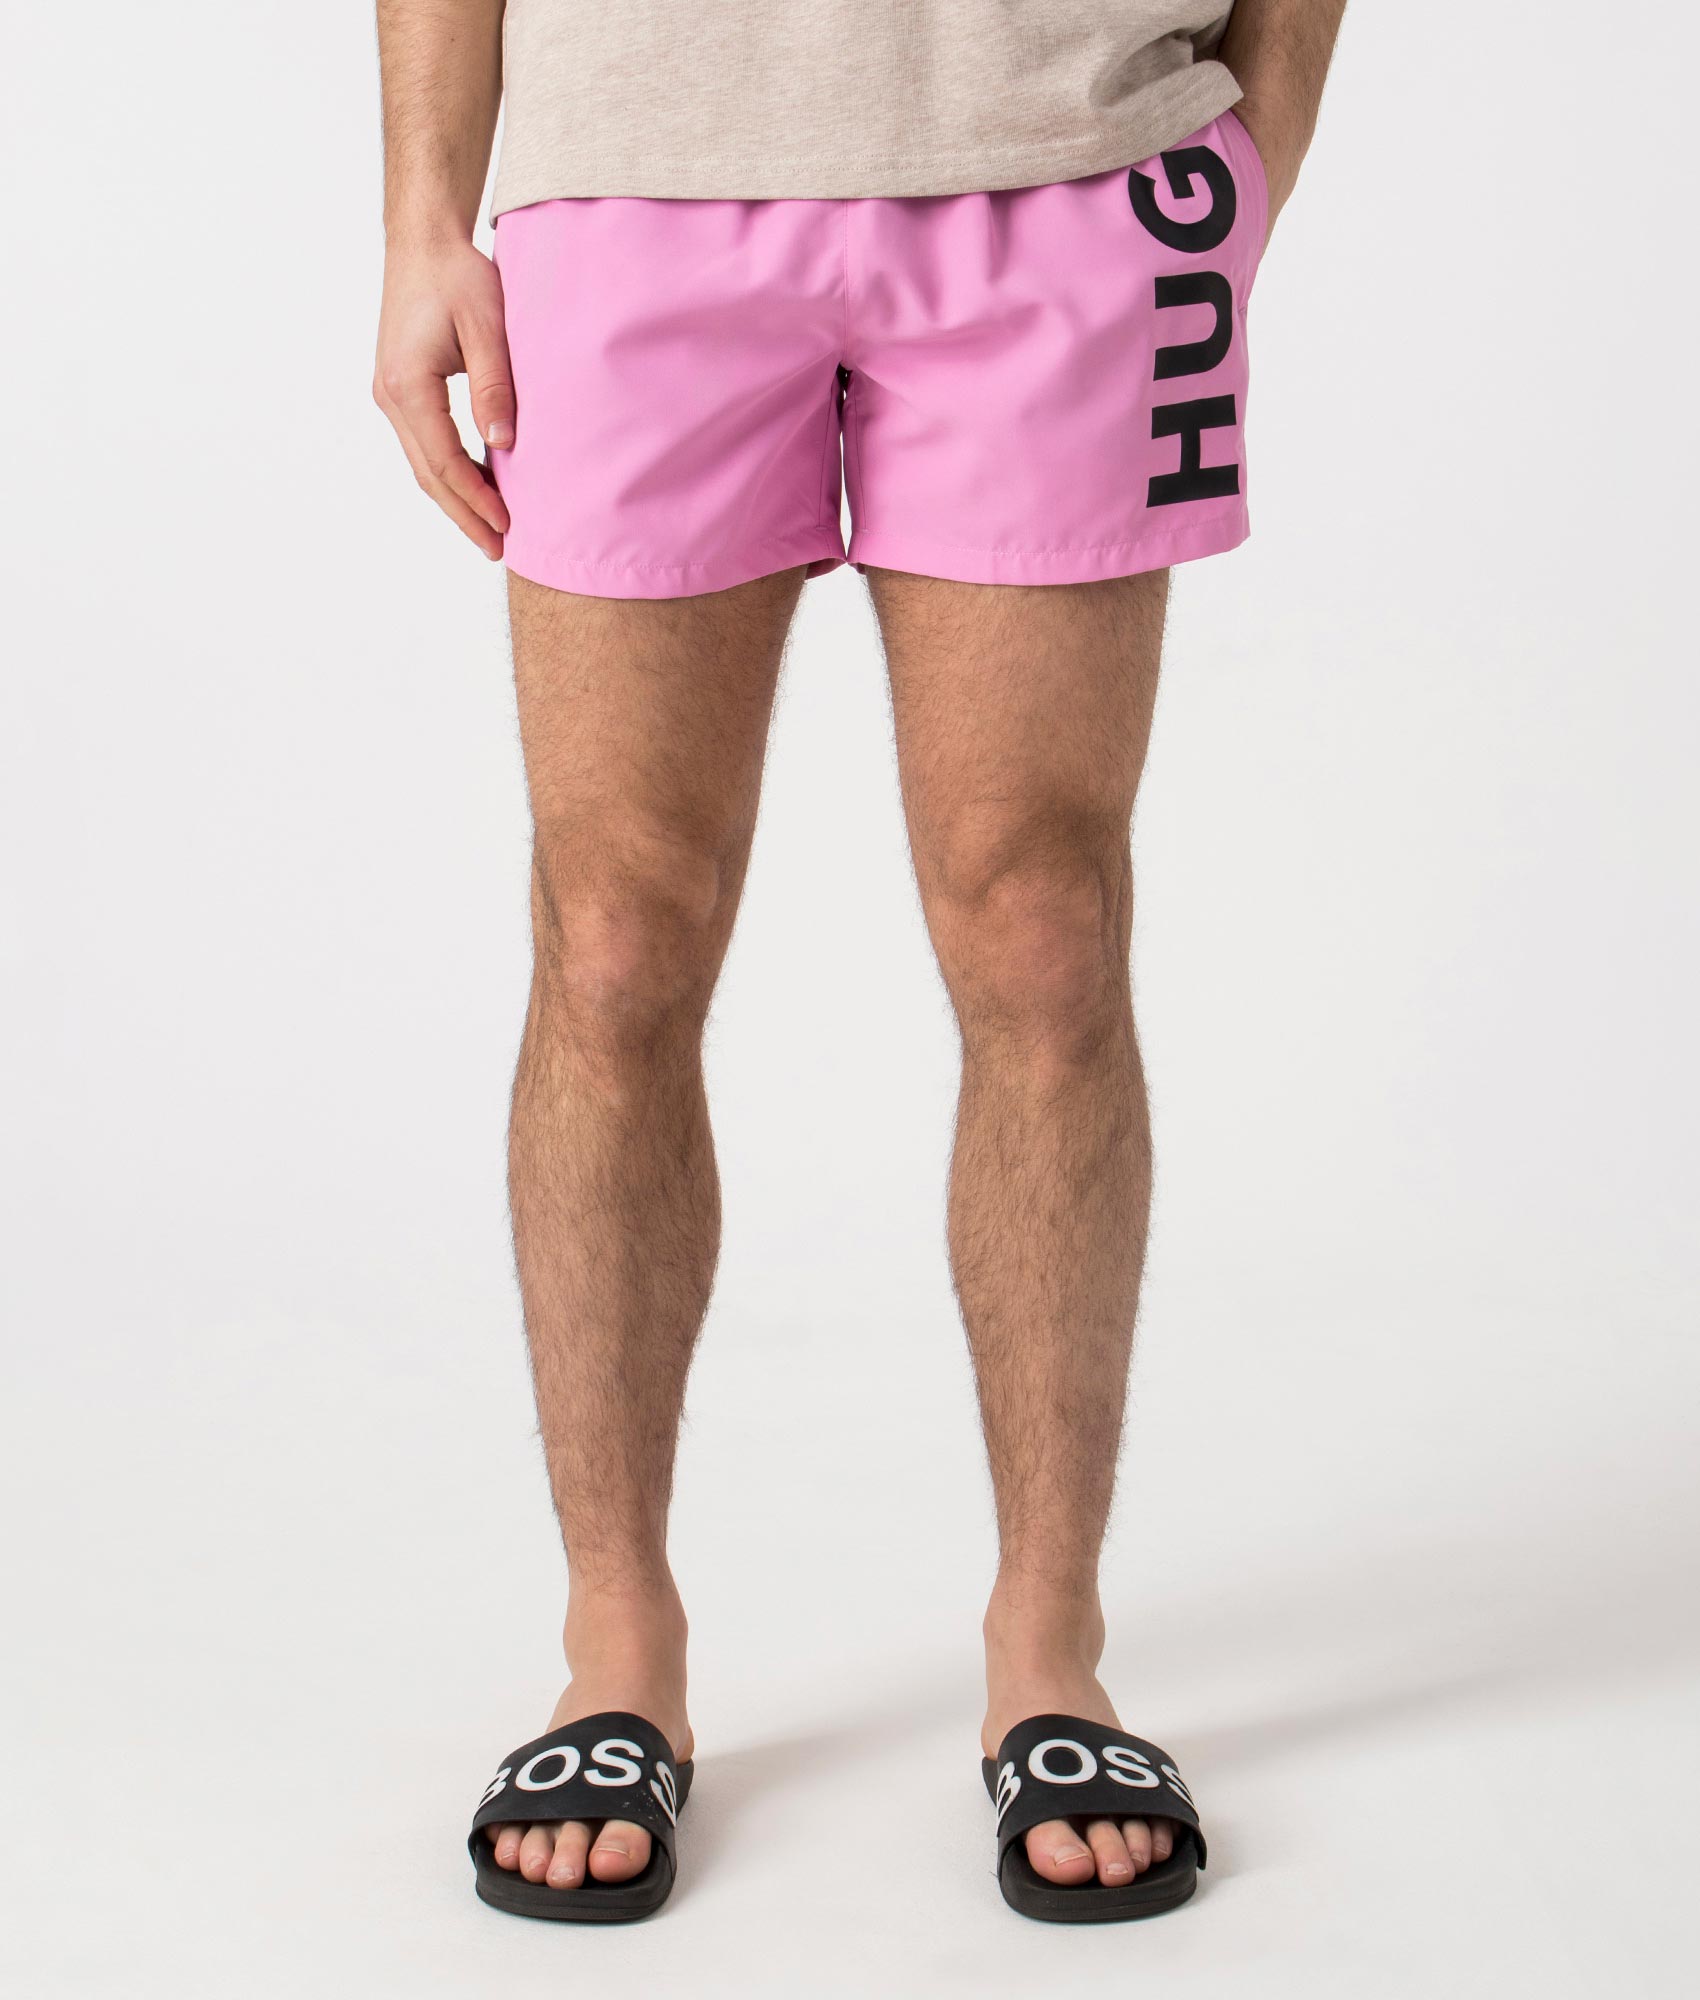 HUGO Mens ABAS Lined Swim Shorts - Colour: 661 Medium Pink - Size: Large